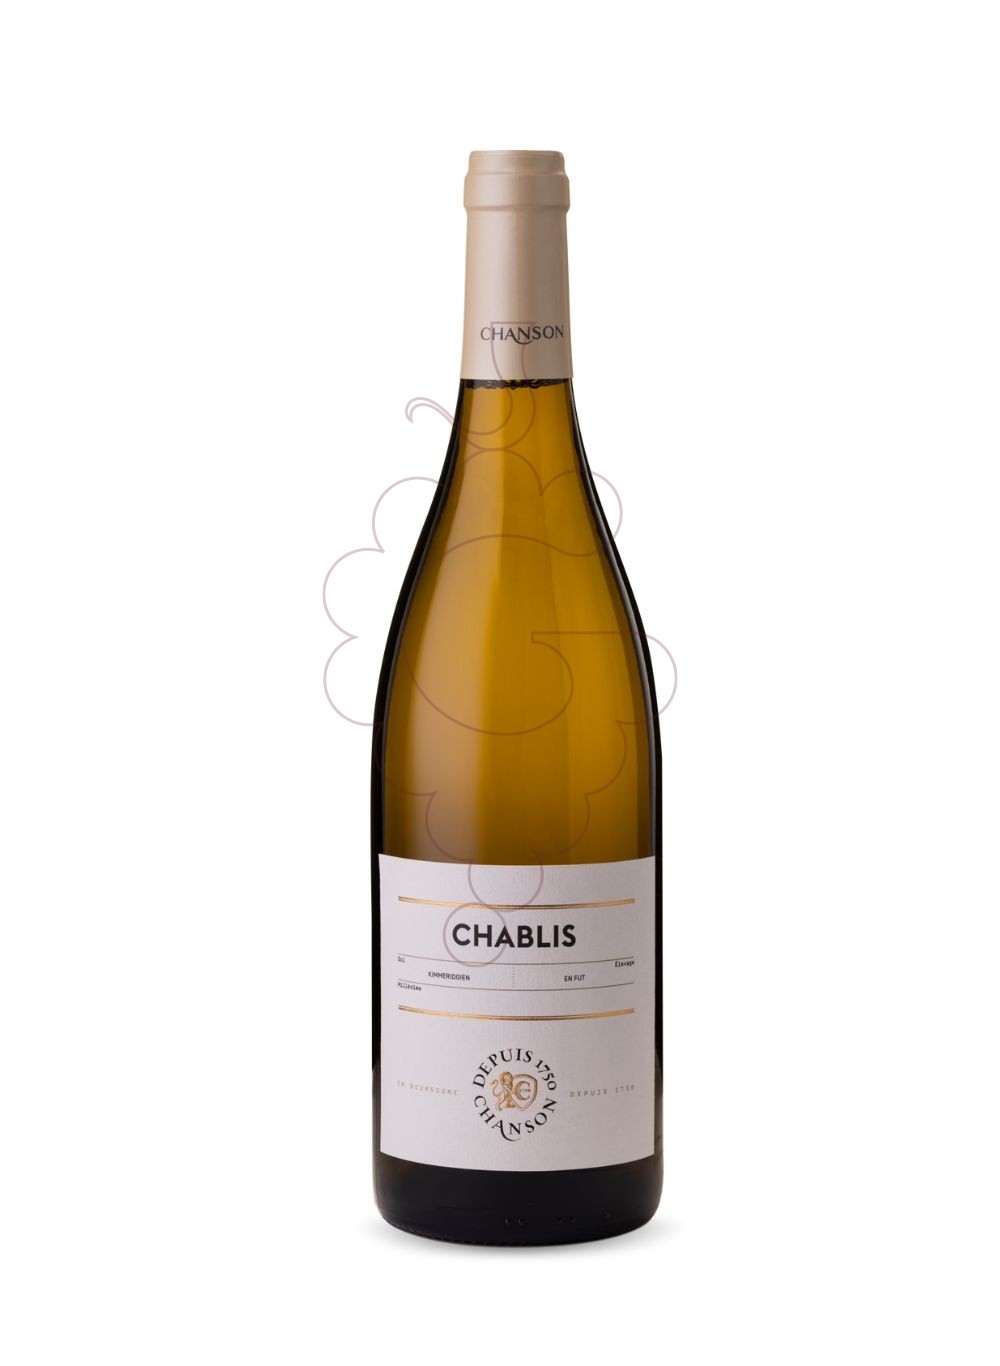 Foto Chanson Chablis Magnum vino blanco